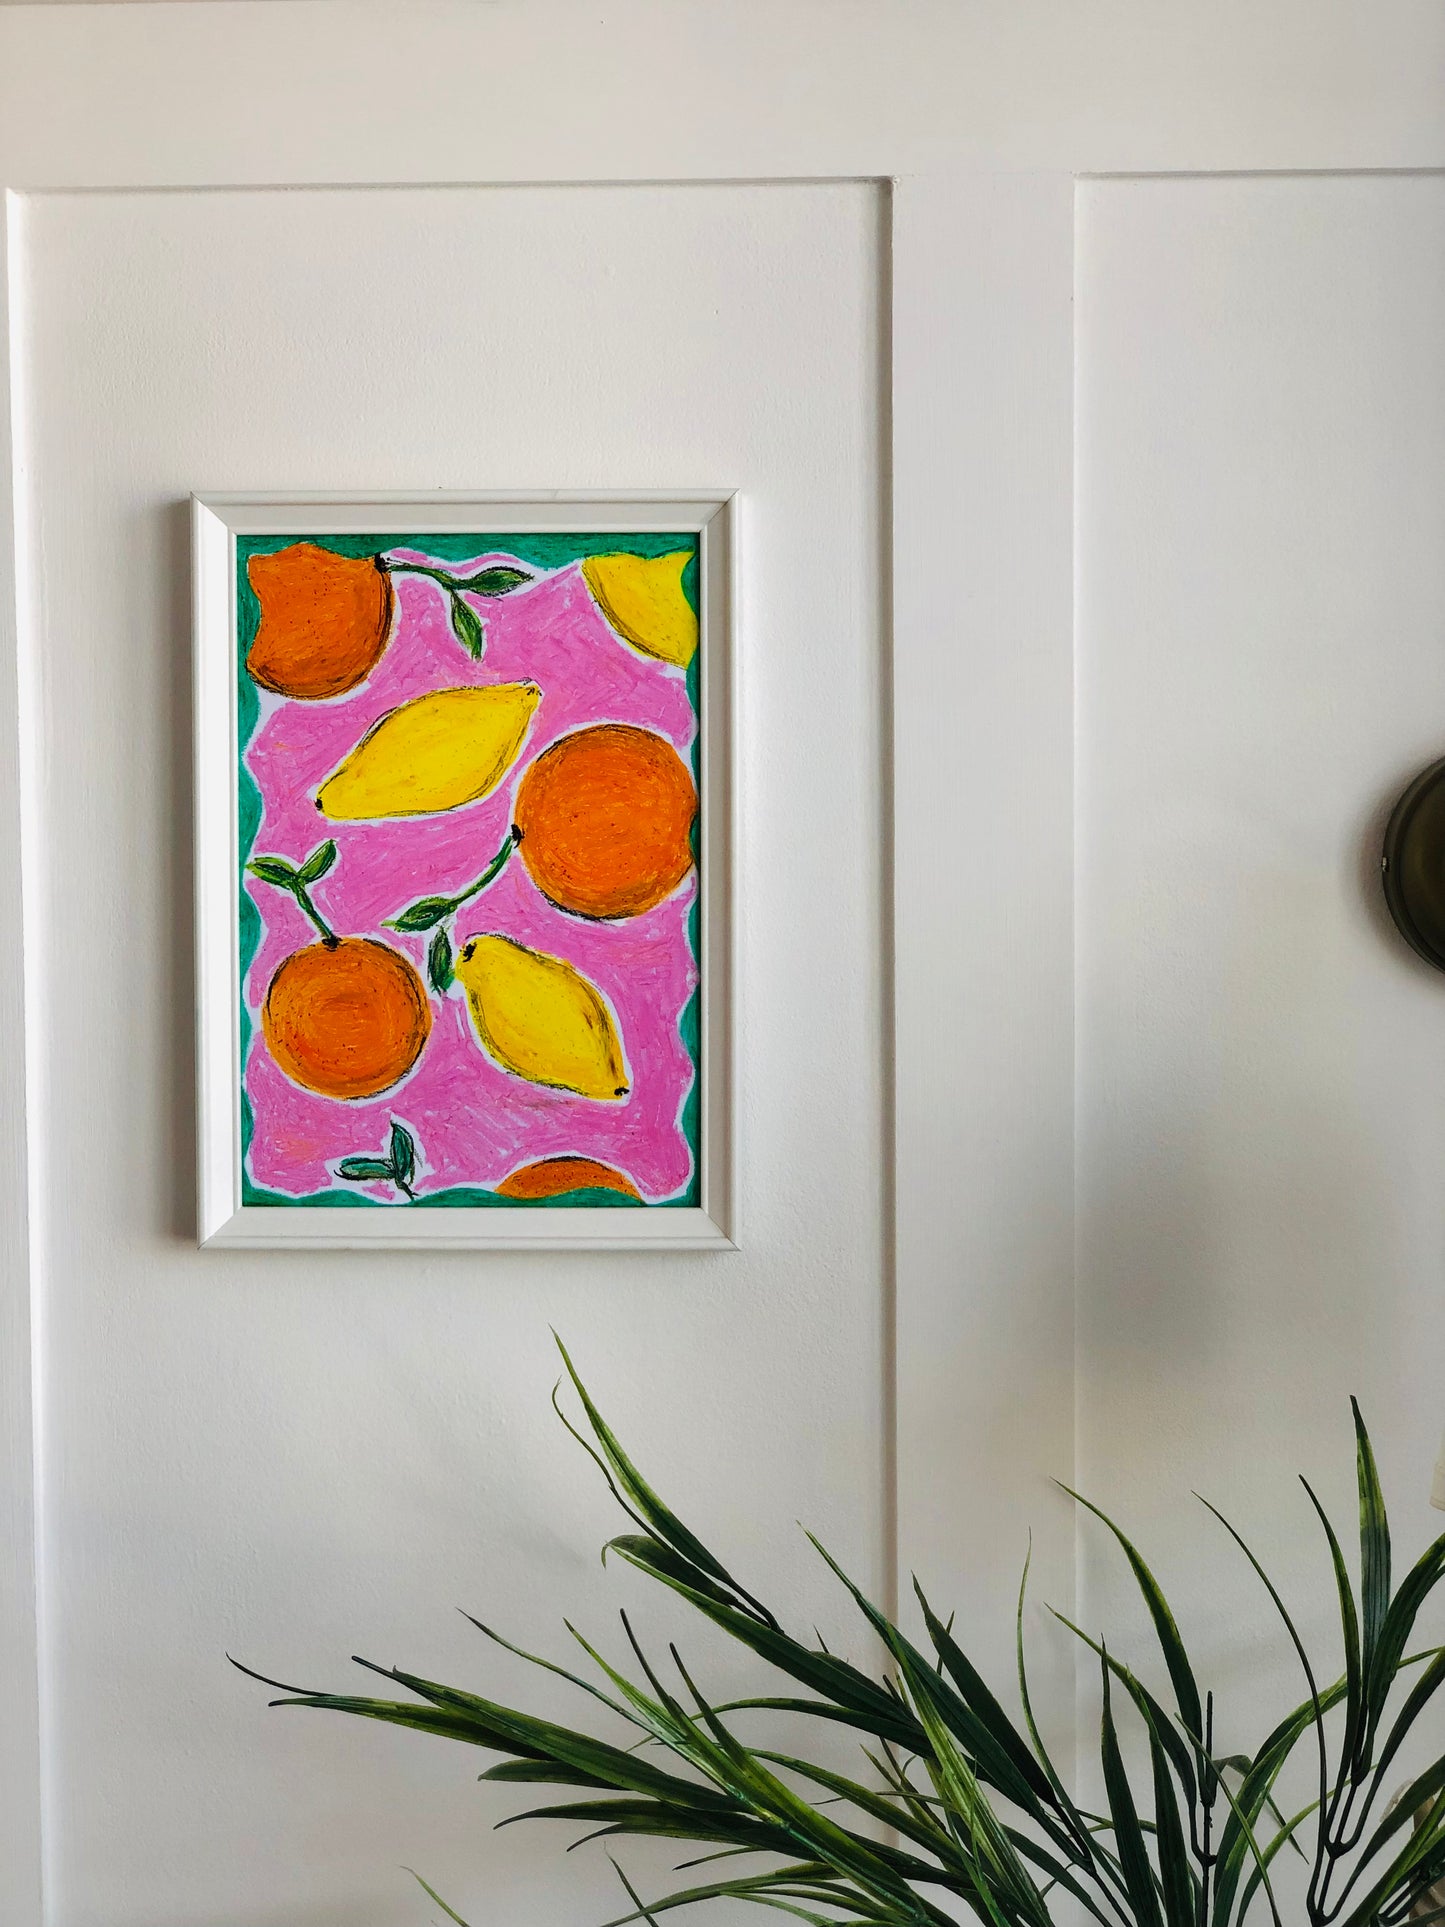 Oranges And Lemons, A4 Unframed Oil Pastel Original Artwork